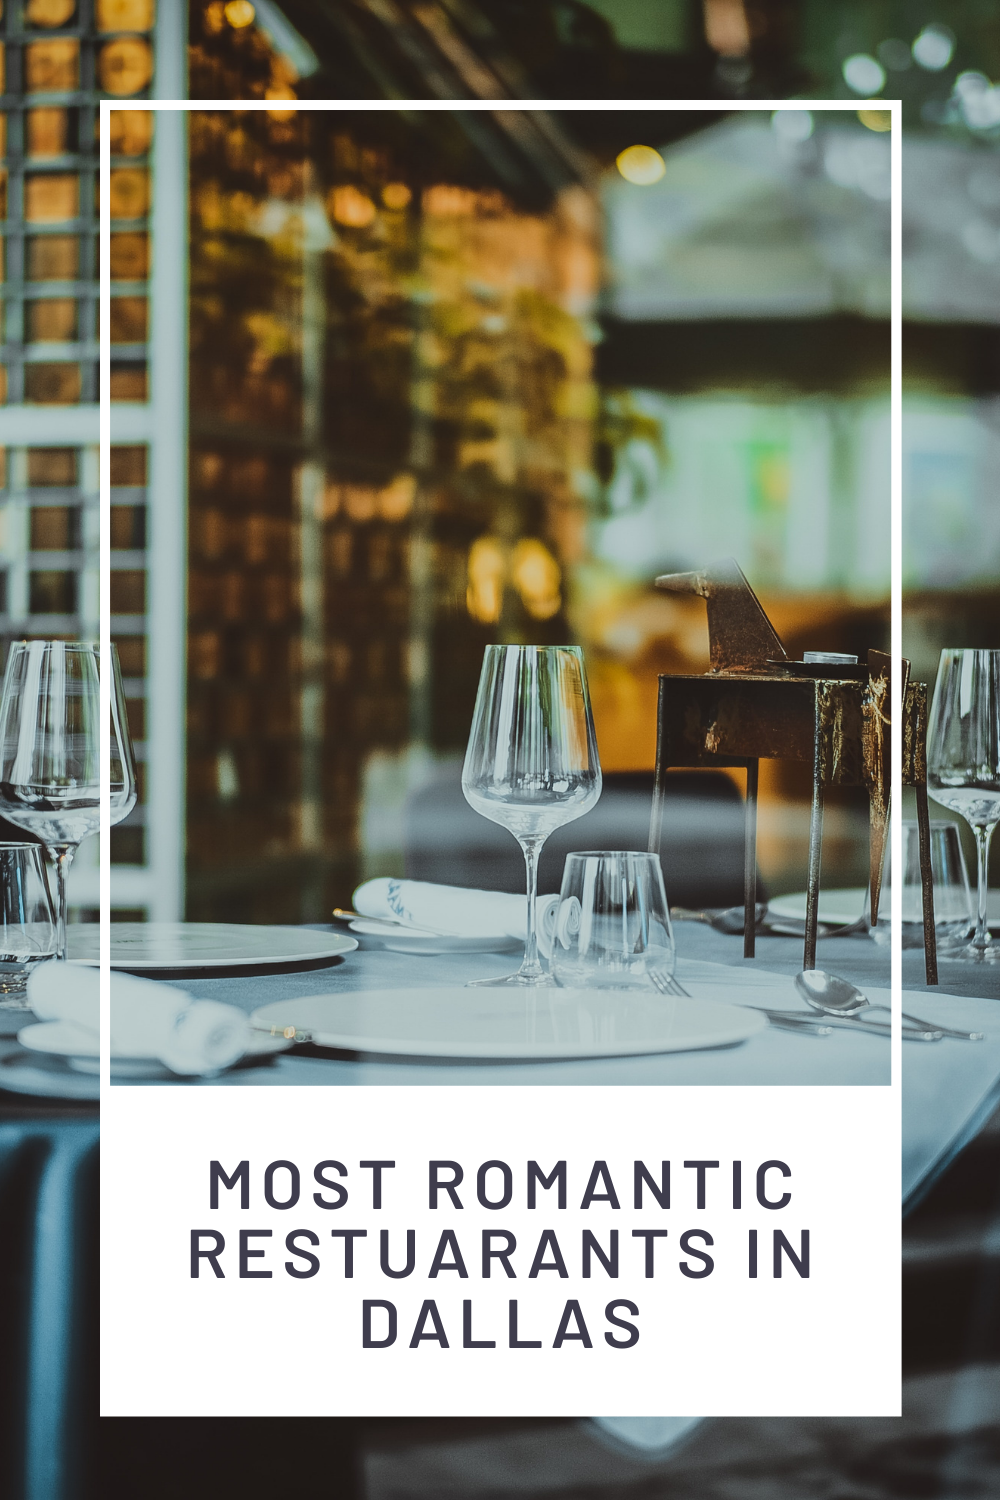 The Most Romantic Restaurants in Dallas